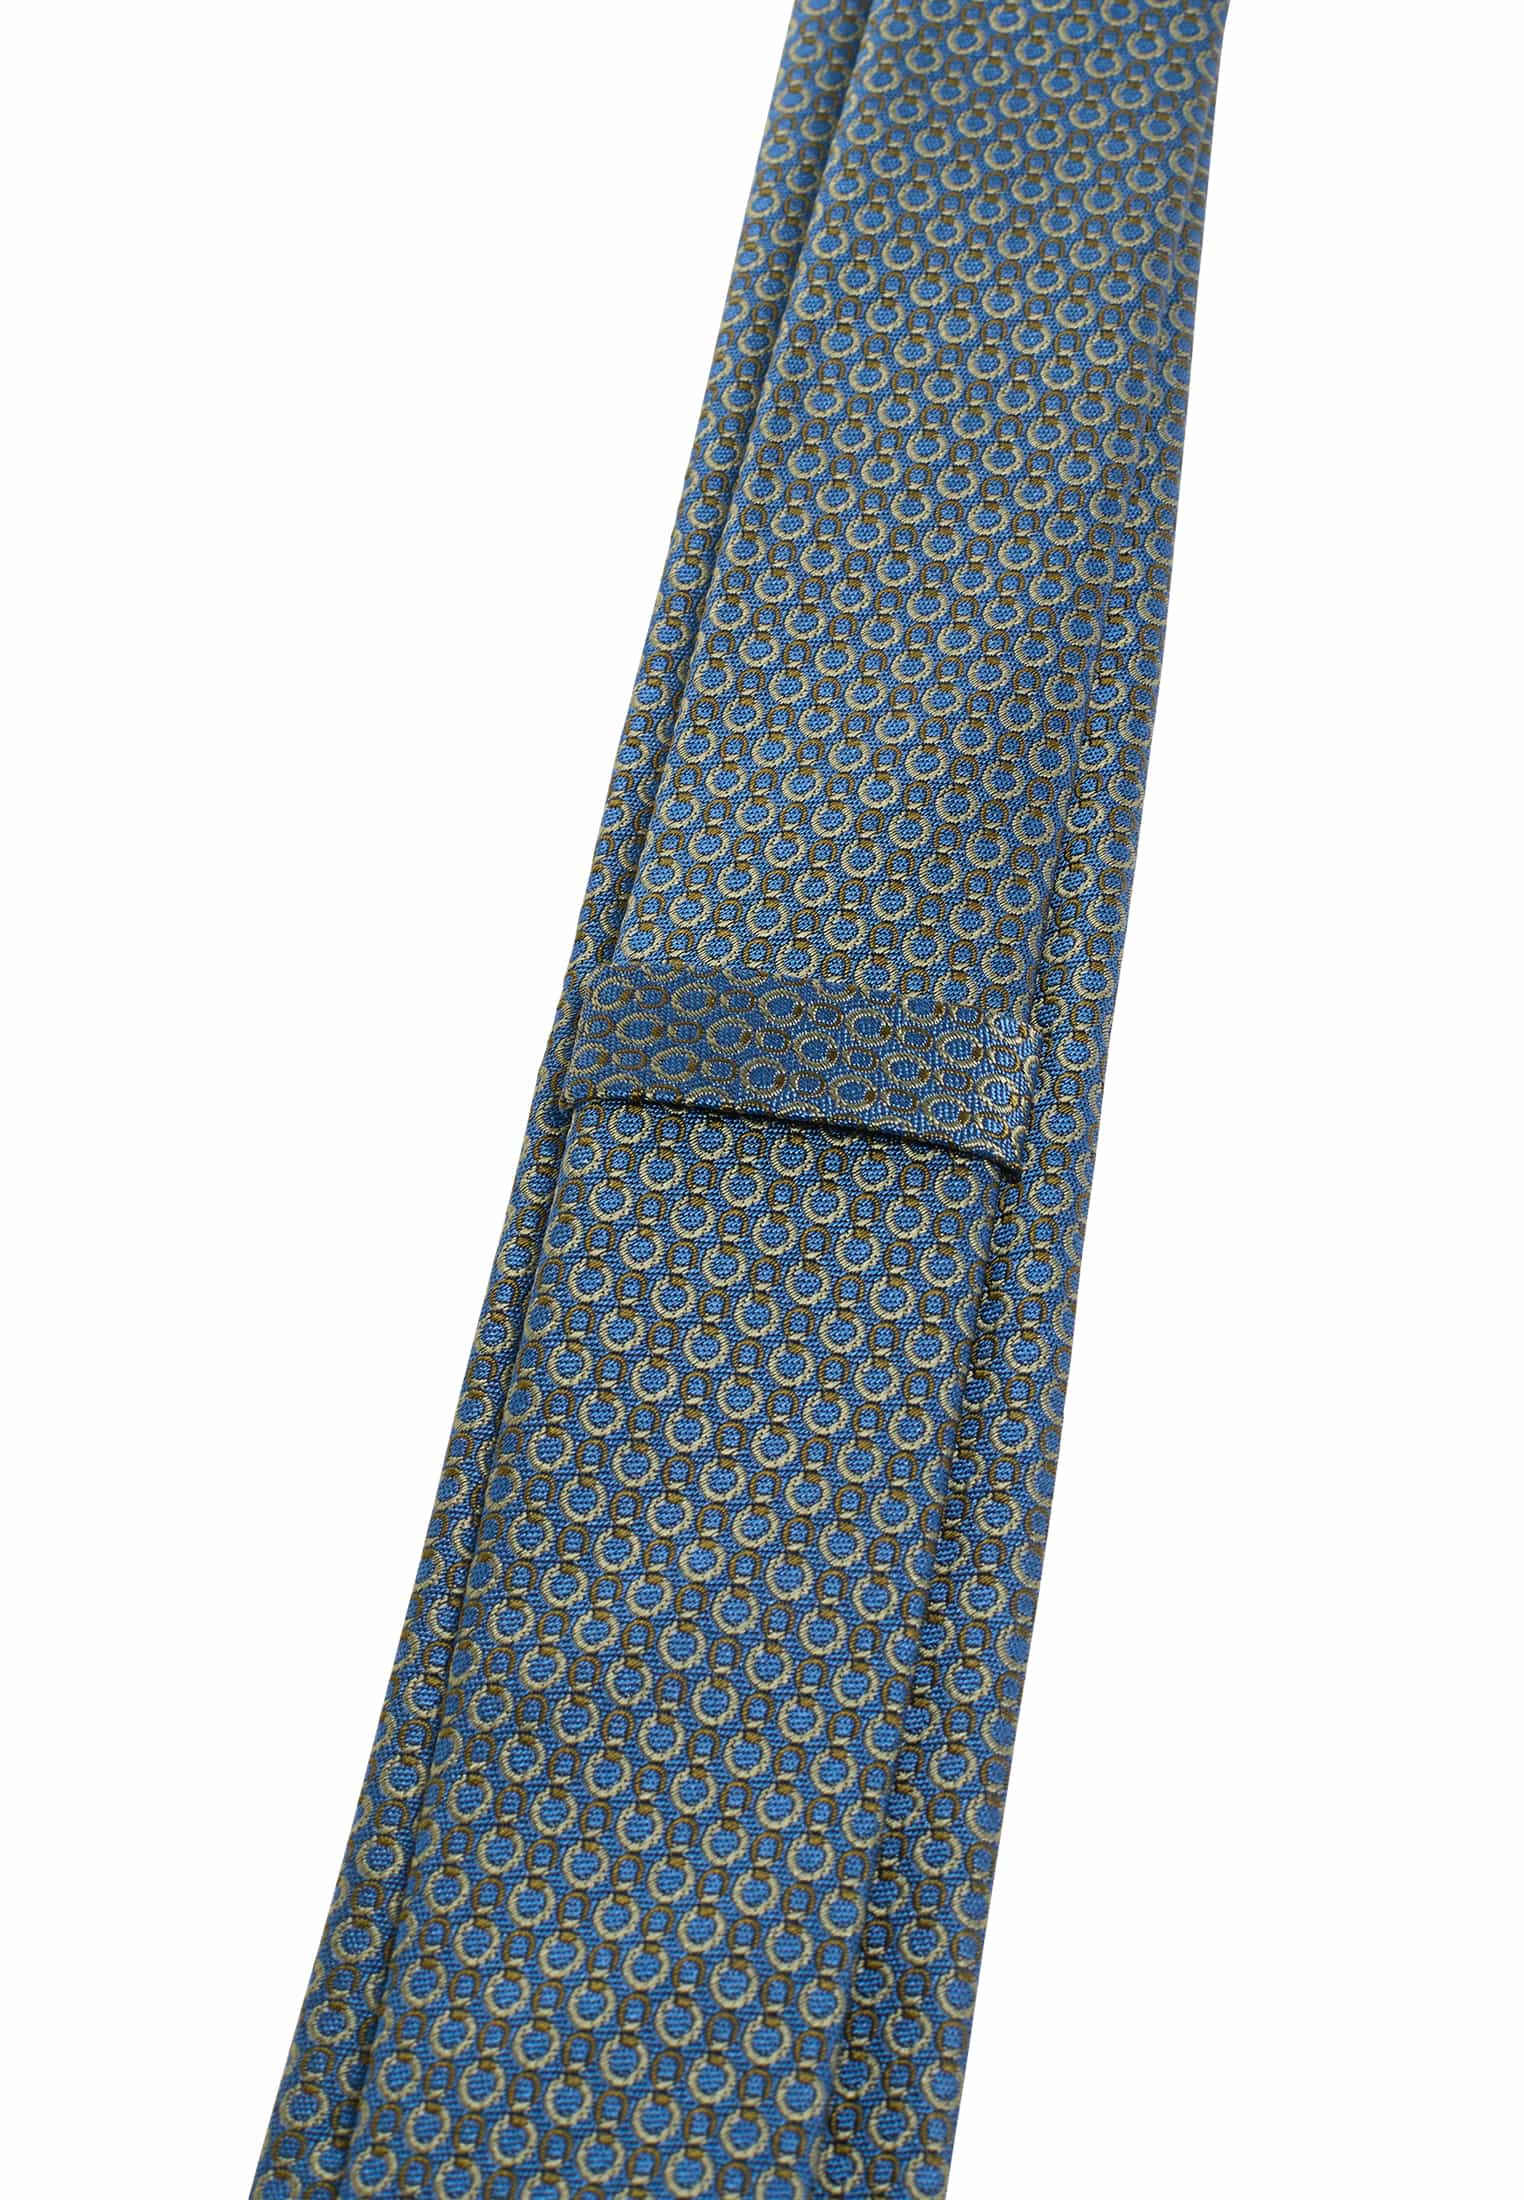 | blau/grün strukturiert Krawatte 142 | | in 1AC01948-81-48-142 blau/grün